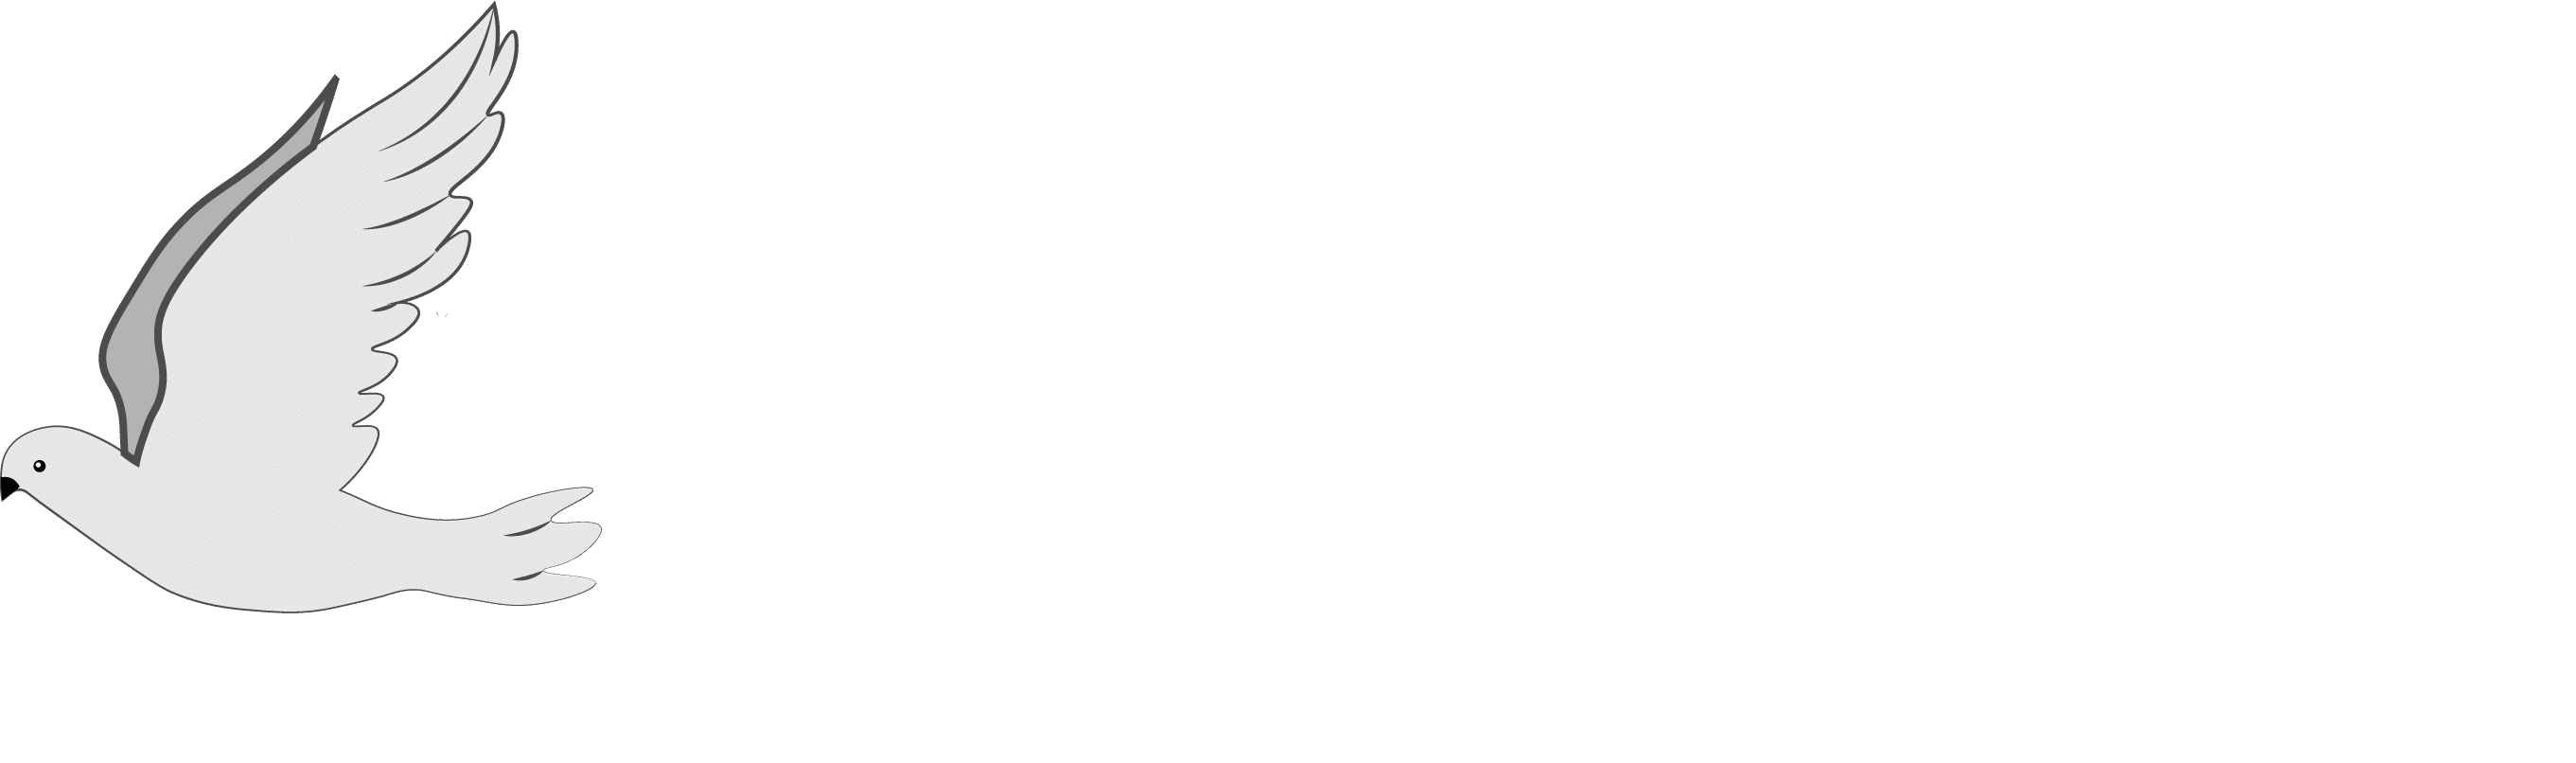 Door of Hope logo